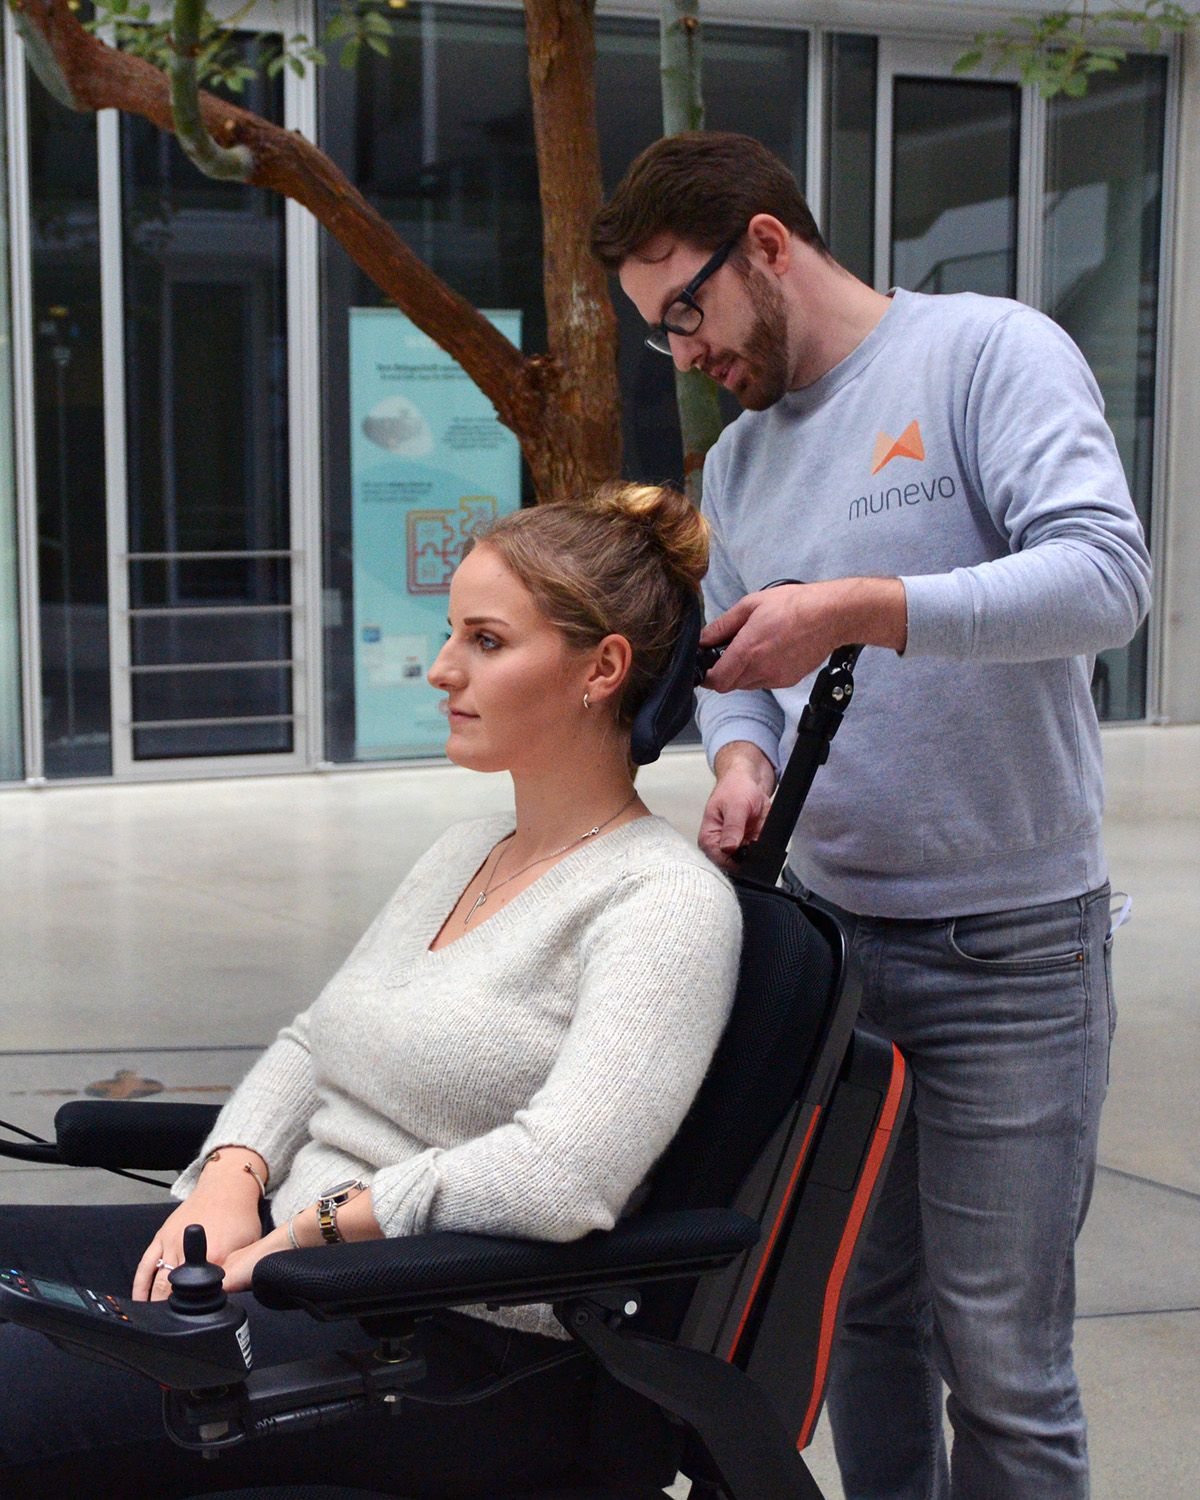 munevo-Mitarbeiter beim Einrichten von munevo DRIVE für eine Nutzerin. Der Mitarbeiter stellt die Kopfstütze des Rollstuhls ein.